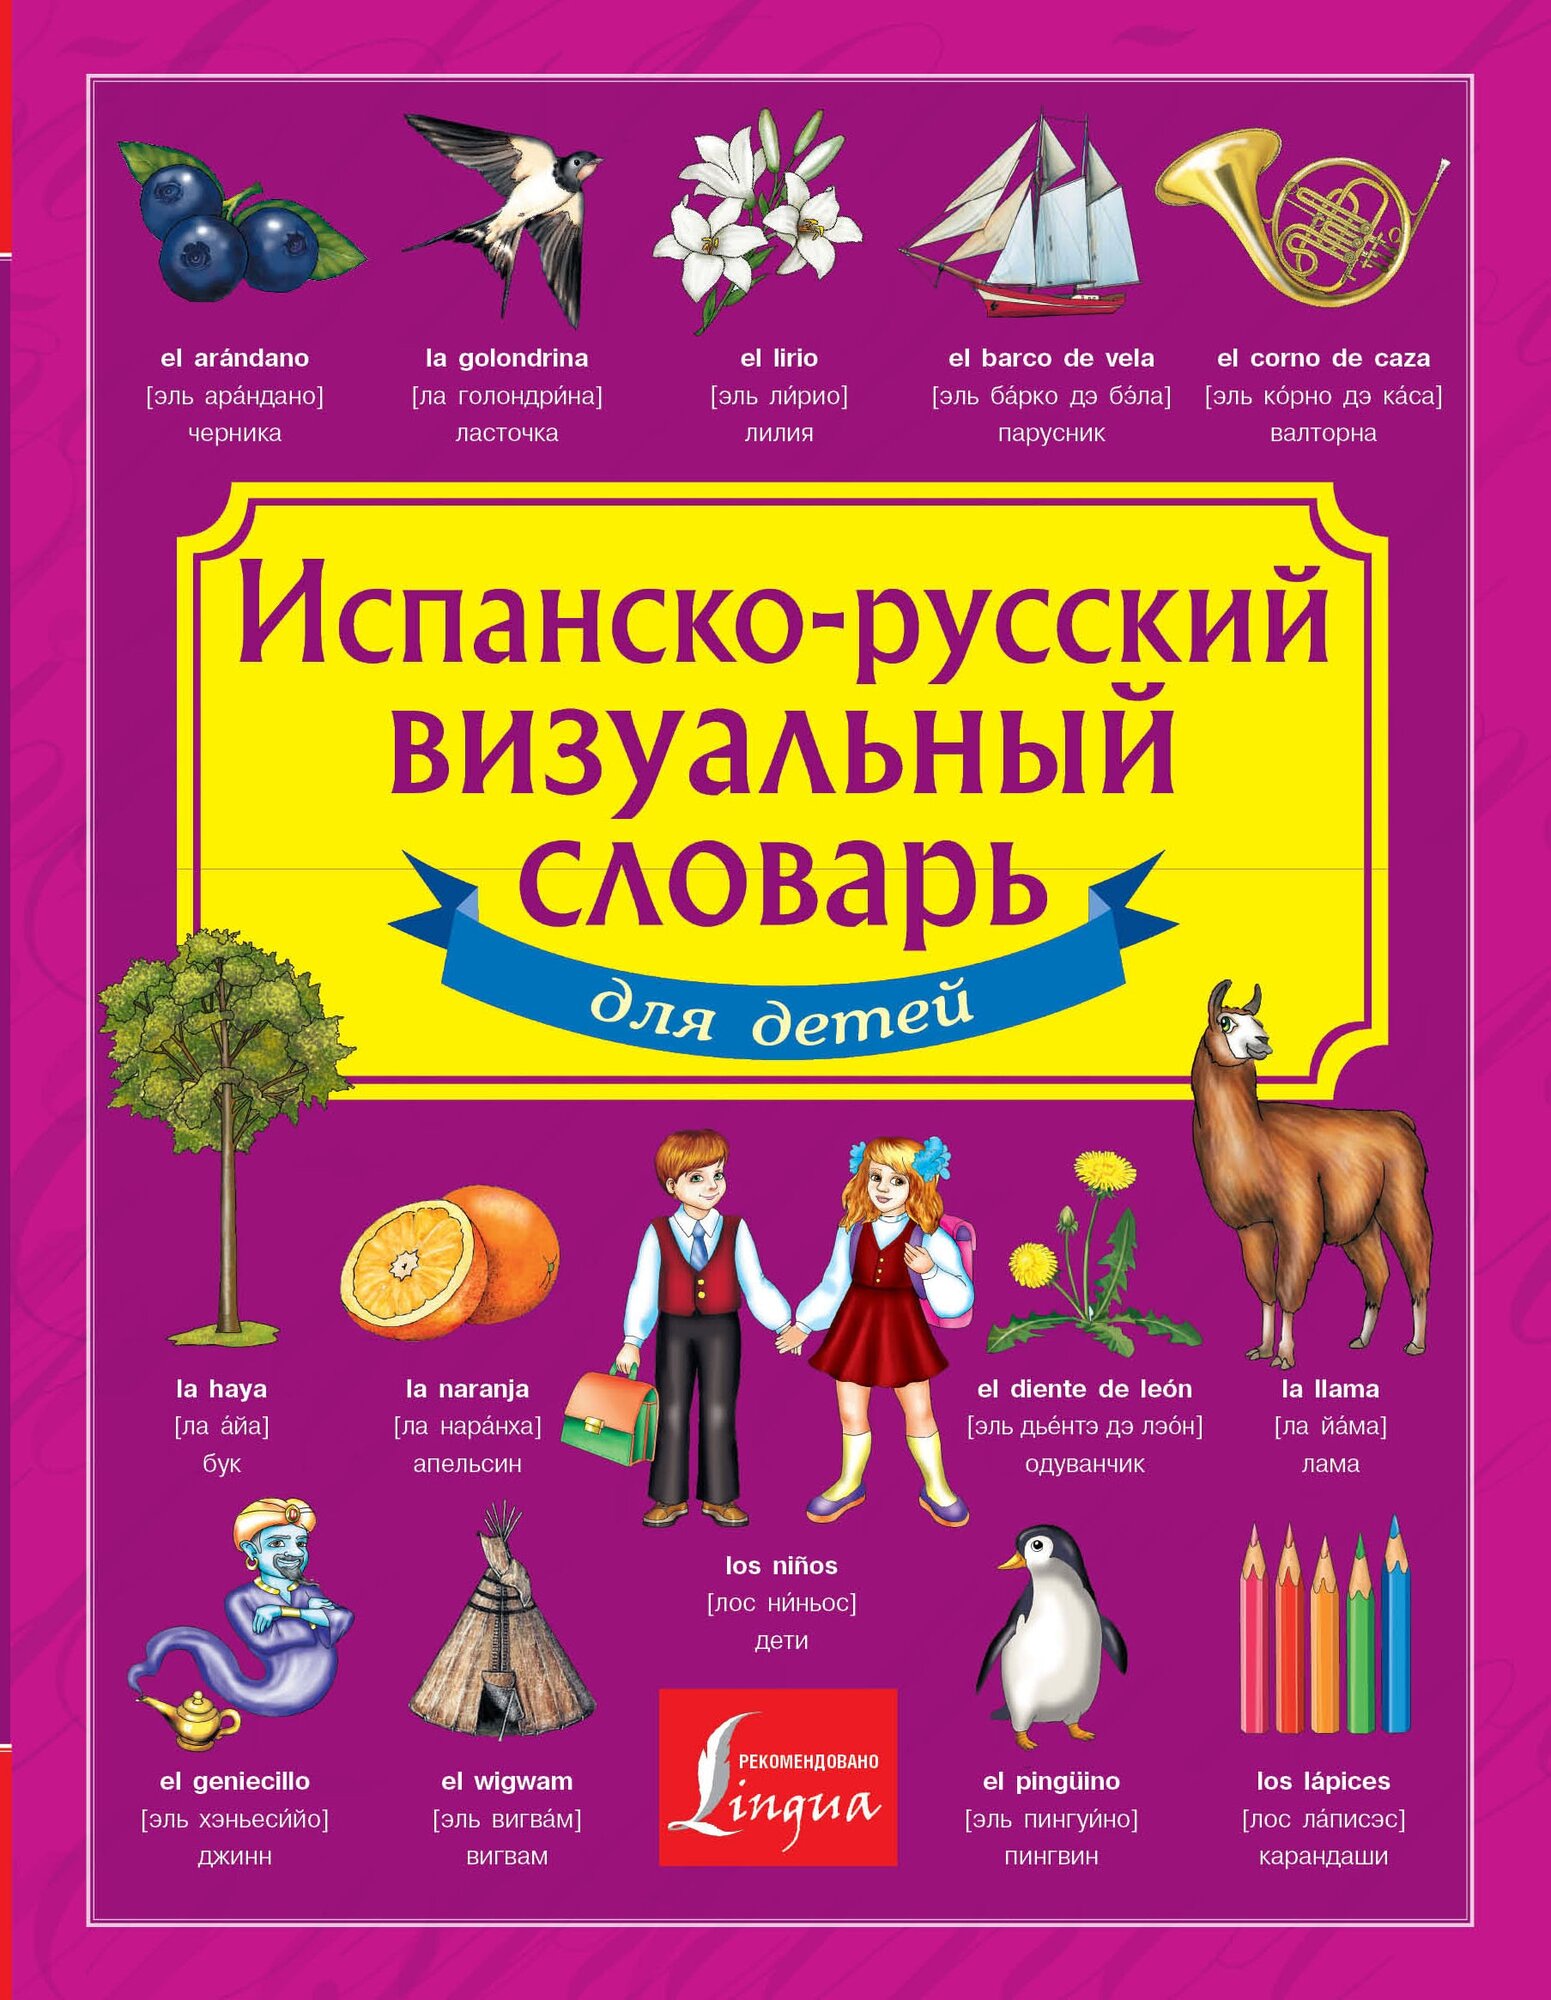 Испанско-русский визуальный словарь для детей .